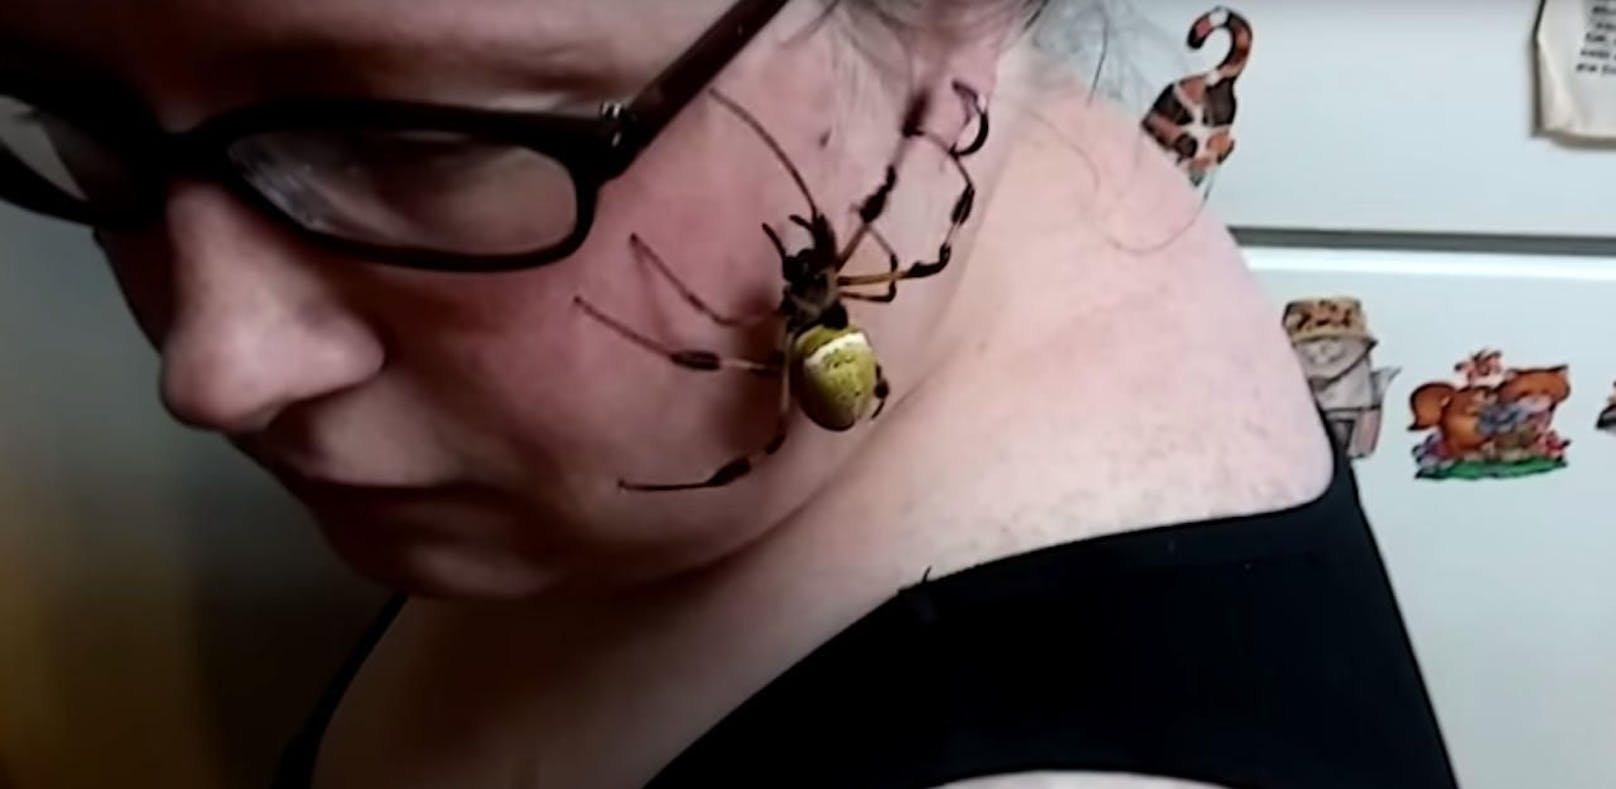 Spinne gefunden: Wären Sie tapfer wie diese Frau?